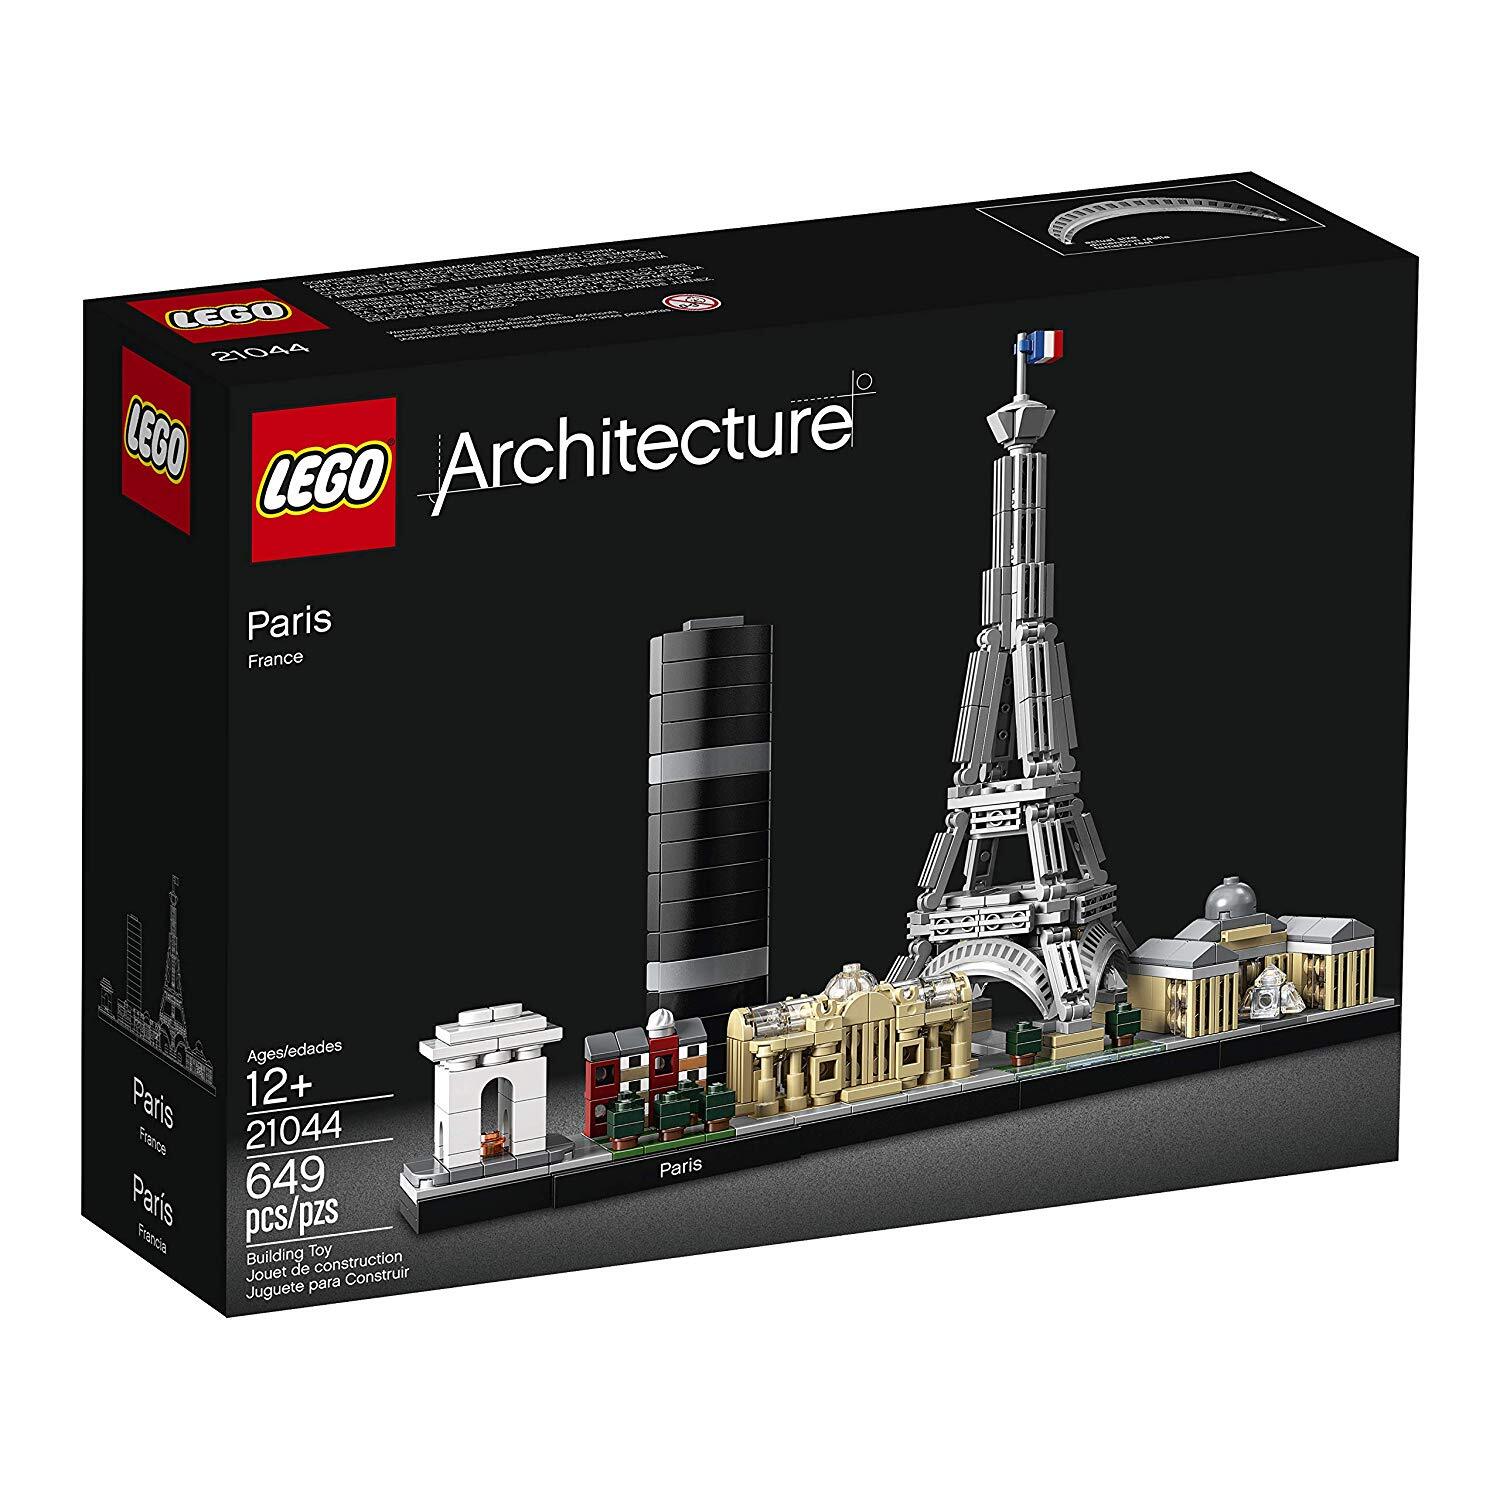 LEGO 21044 Architecture Парижфото1